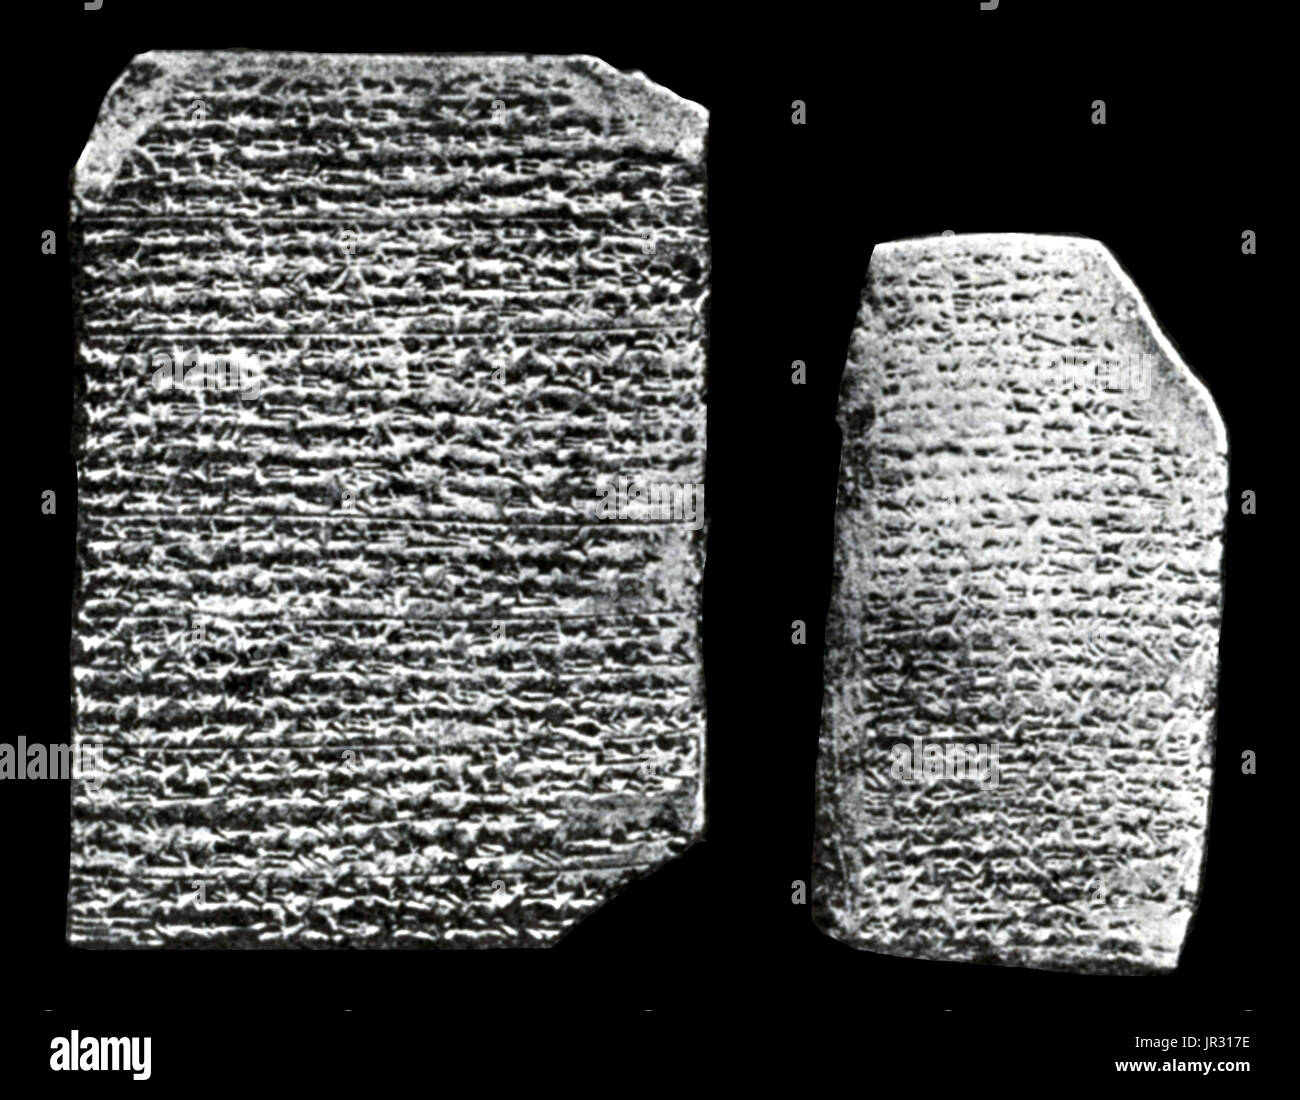 L'Amarna tablets sont une archive, écrit sur des tablettes d'argile, comprenant surtout de la correspondance diplomatique entre l'administration égyptienne et ses représentants en Canaan et Amurru sous le Nouvel Empire. Les lettres d'Amarna sont inhabituelles à la recherche Égyptologiques, parce qu'ils sont pour la plupart écrits en akkadien cunéiforme, le système d'écriture de l'ancienne Mésopotamie, plutôt que celle de l'Égypte ancienne. La correspondance écrite s'étend sur une période d'au plus trente ans. Les lettres d'Amarna sont d'une grande importance pour les études bibliques, ainsi que la linguistique sémitique, puisqu'ils faire la lumière sur les Banque D'Images